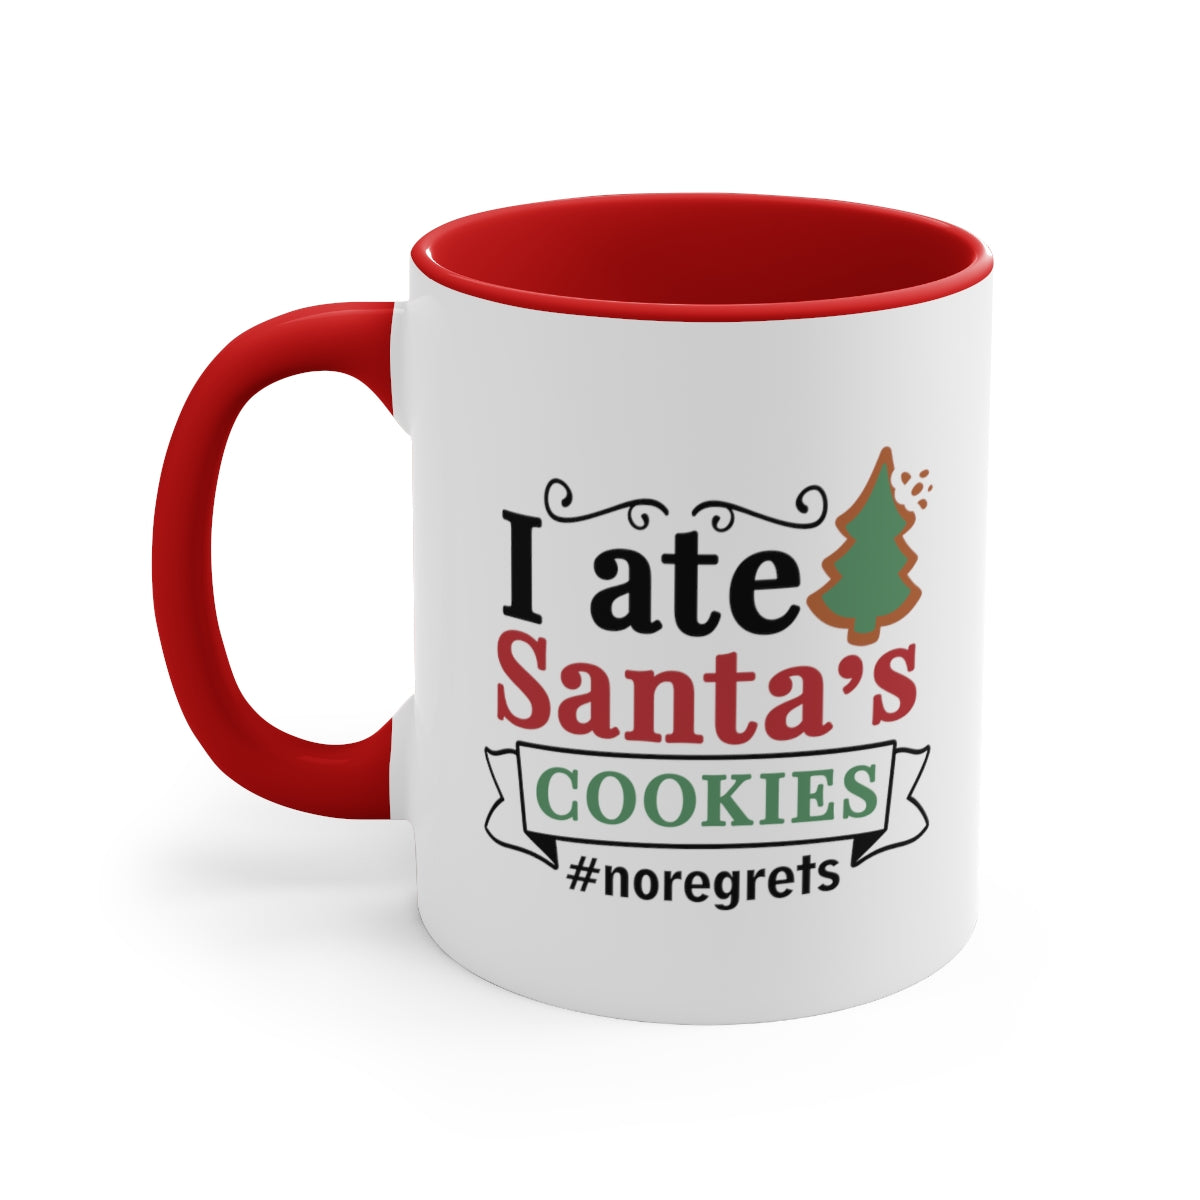 I ate Santa's Cookies | Christmas Mug